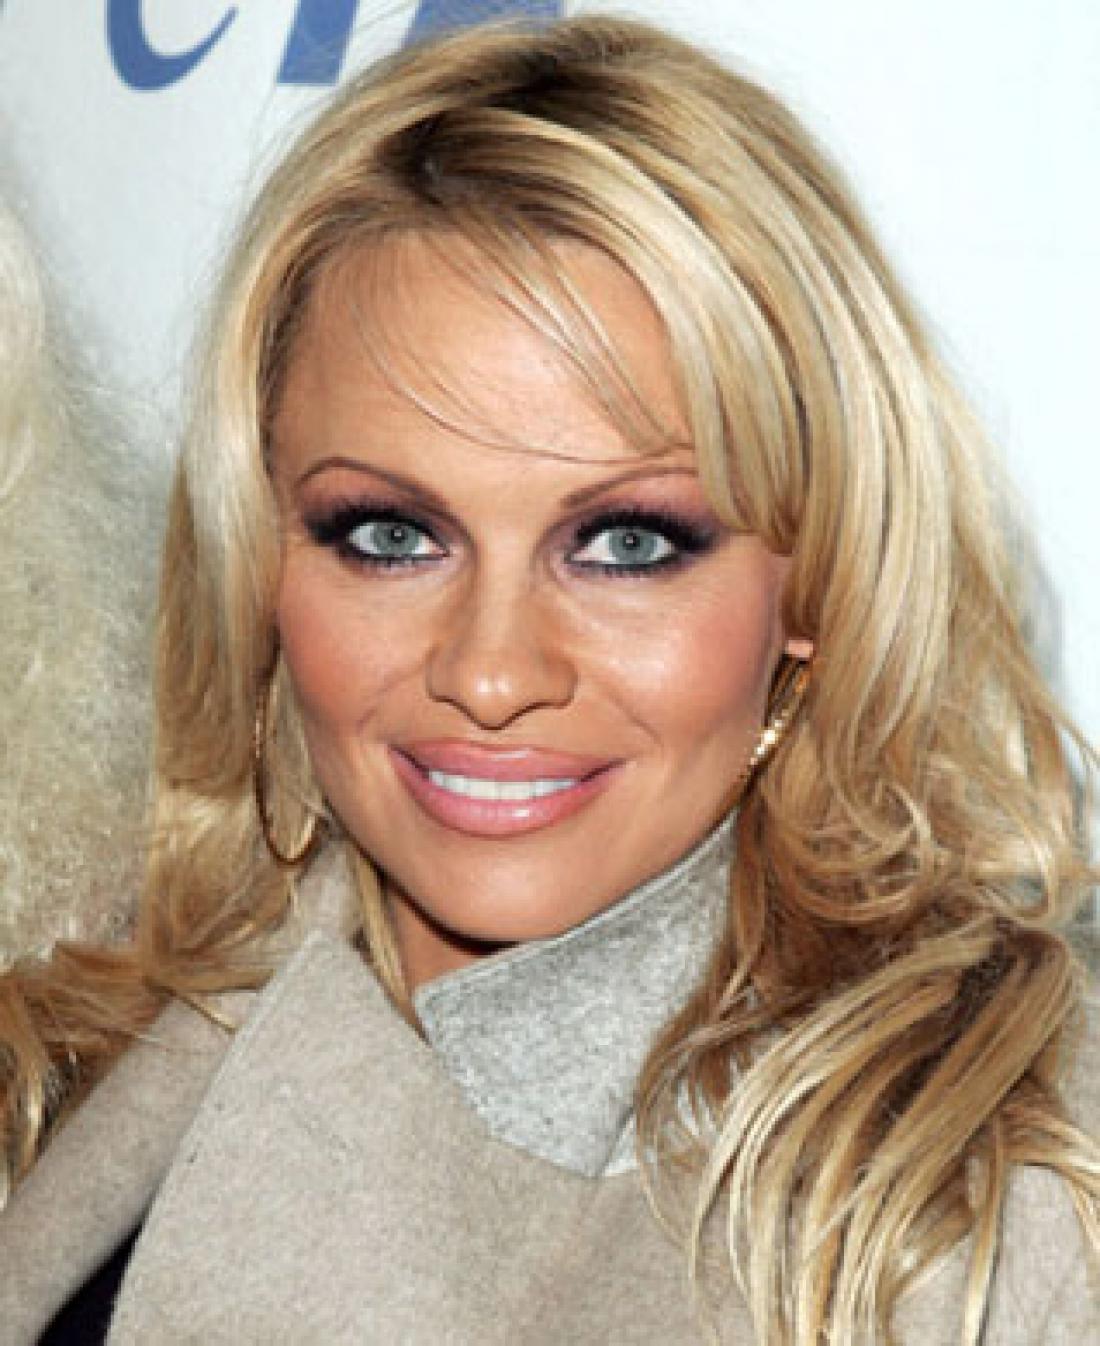 Primer pretankih obrvi, sicer pa je Pamela Anderson lahko predstavnica v več kategorijah, saj ga lomi v skoraj vseh točkah …